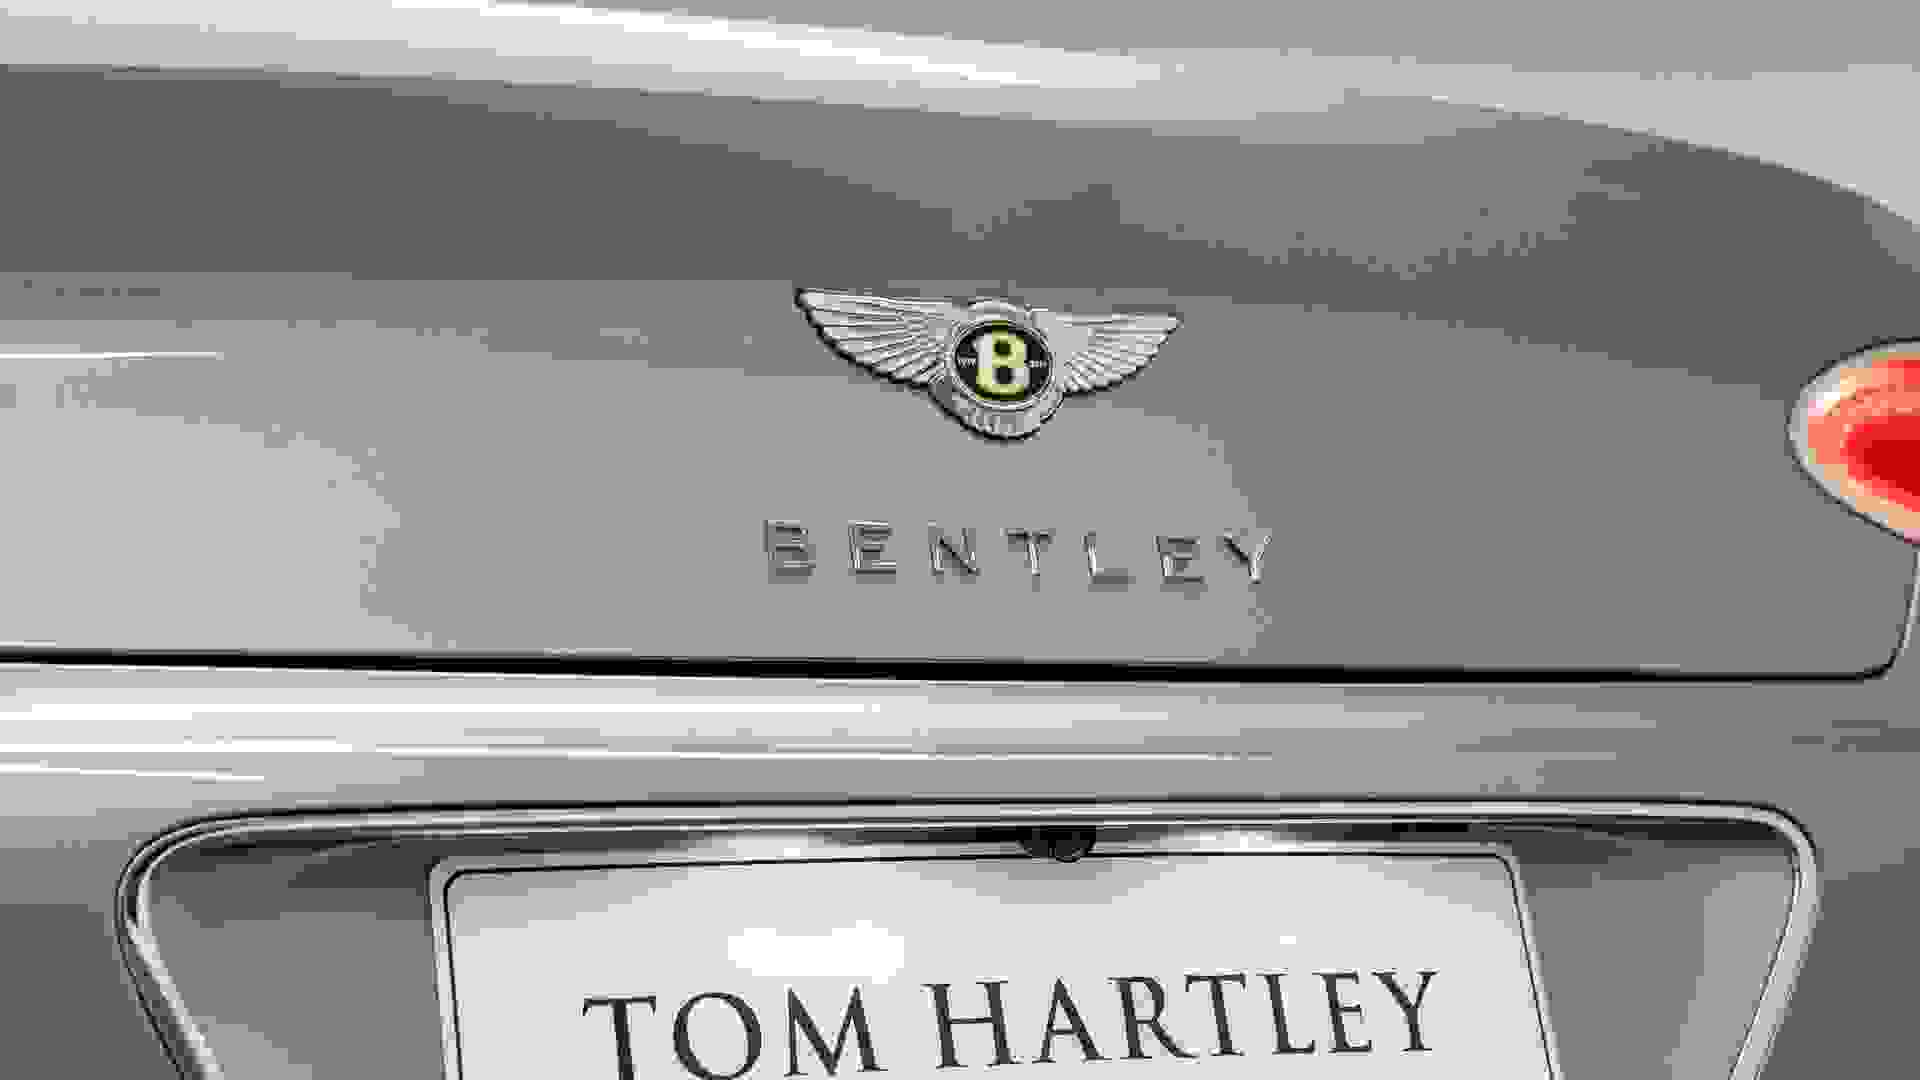 Bentley Continental GTC Photo e73de041-f591-418d-bf95-d1a74b89ad56.jpg